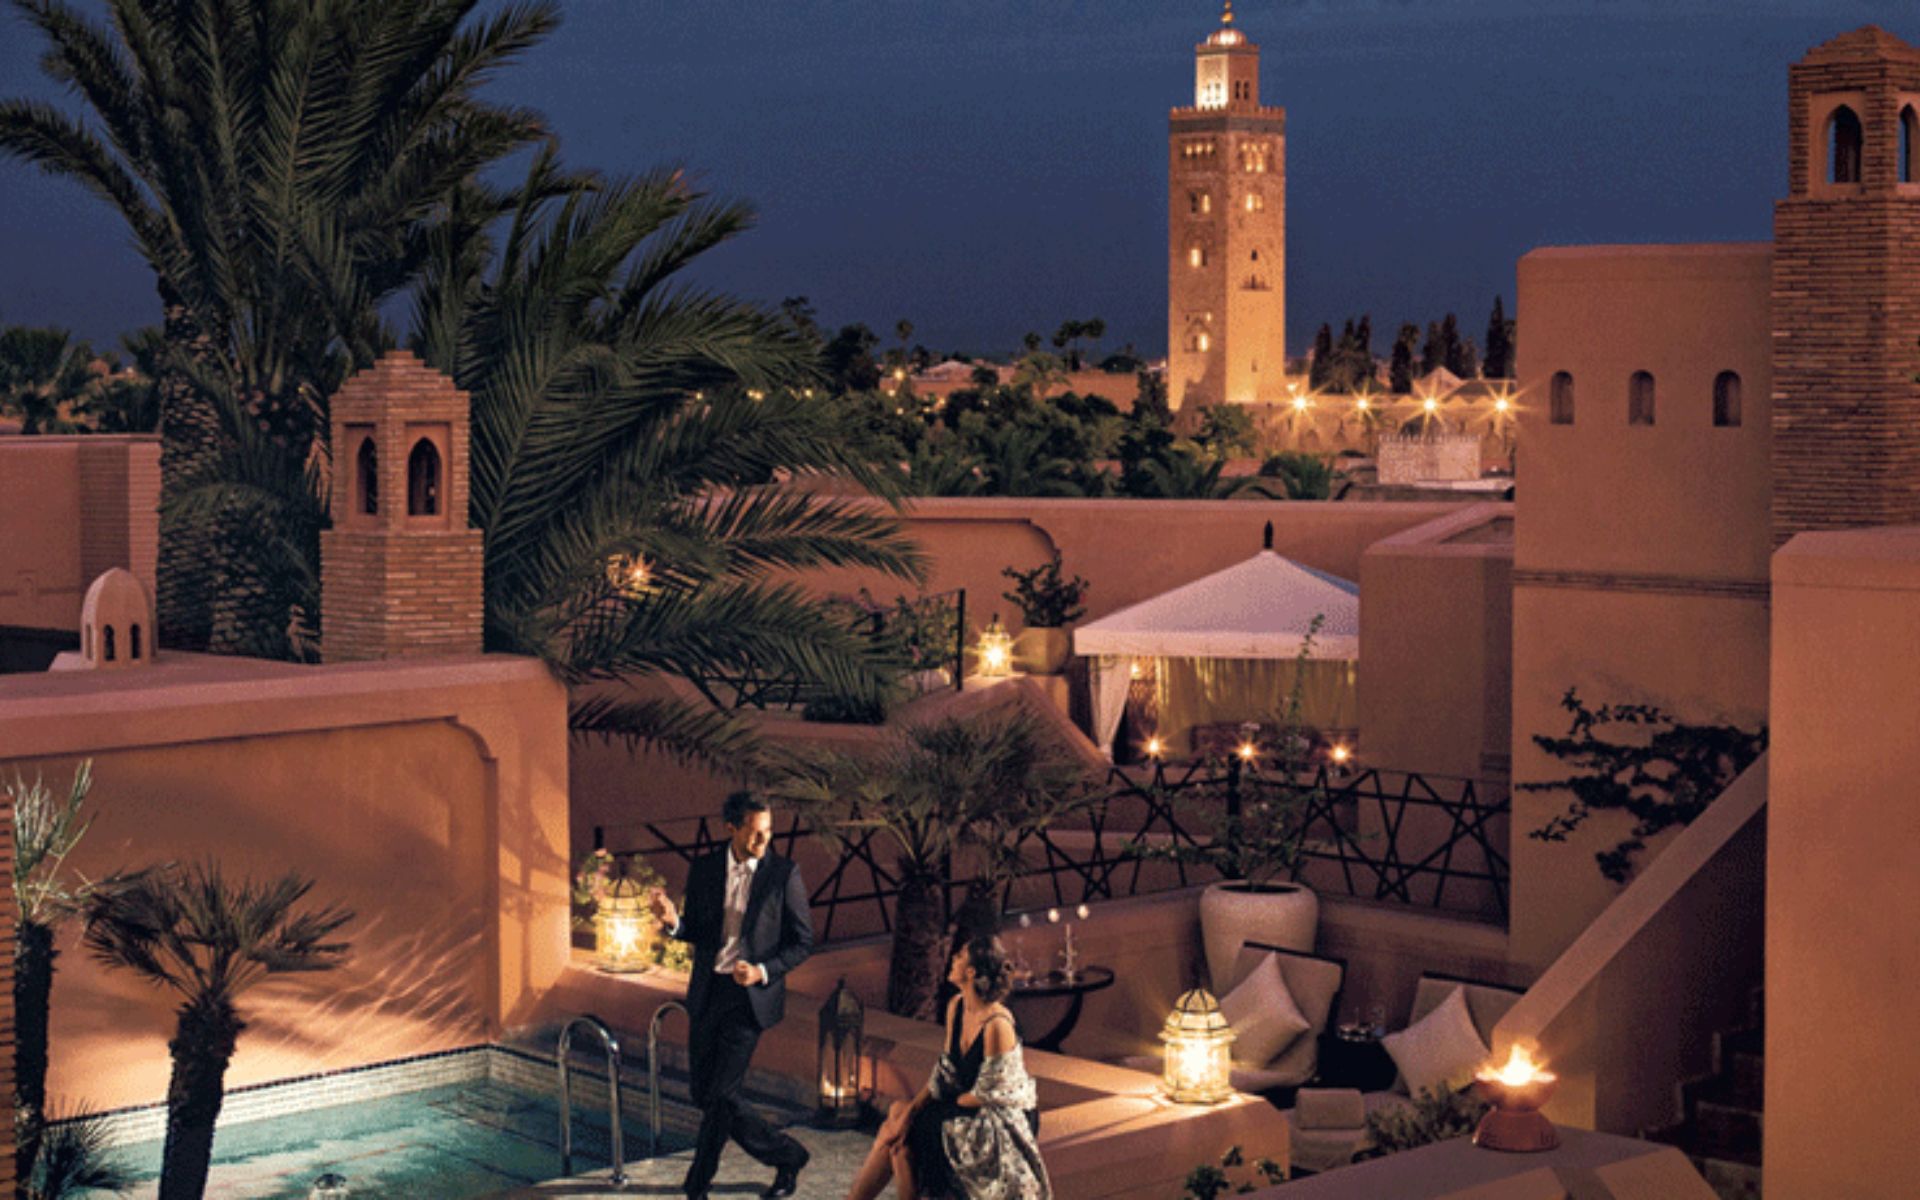 Марракеш дурманная. Марракеш город в Марокко. Отель Amanjena, Марракеш, Марокко. Ночной Марракеш. Марокко самые красивые места.